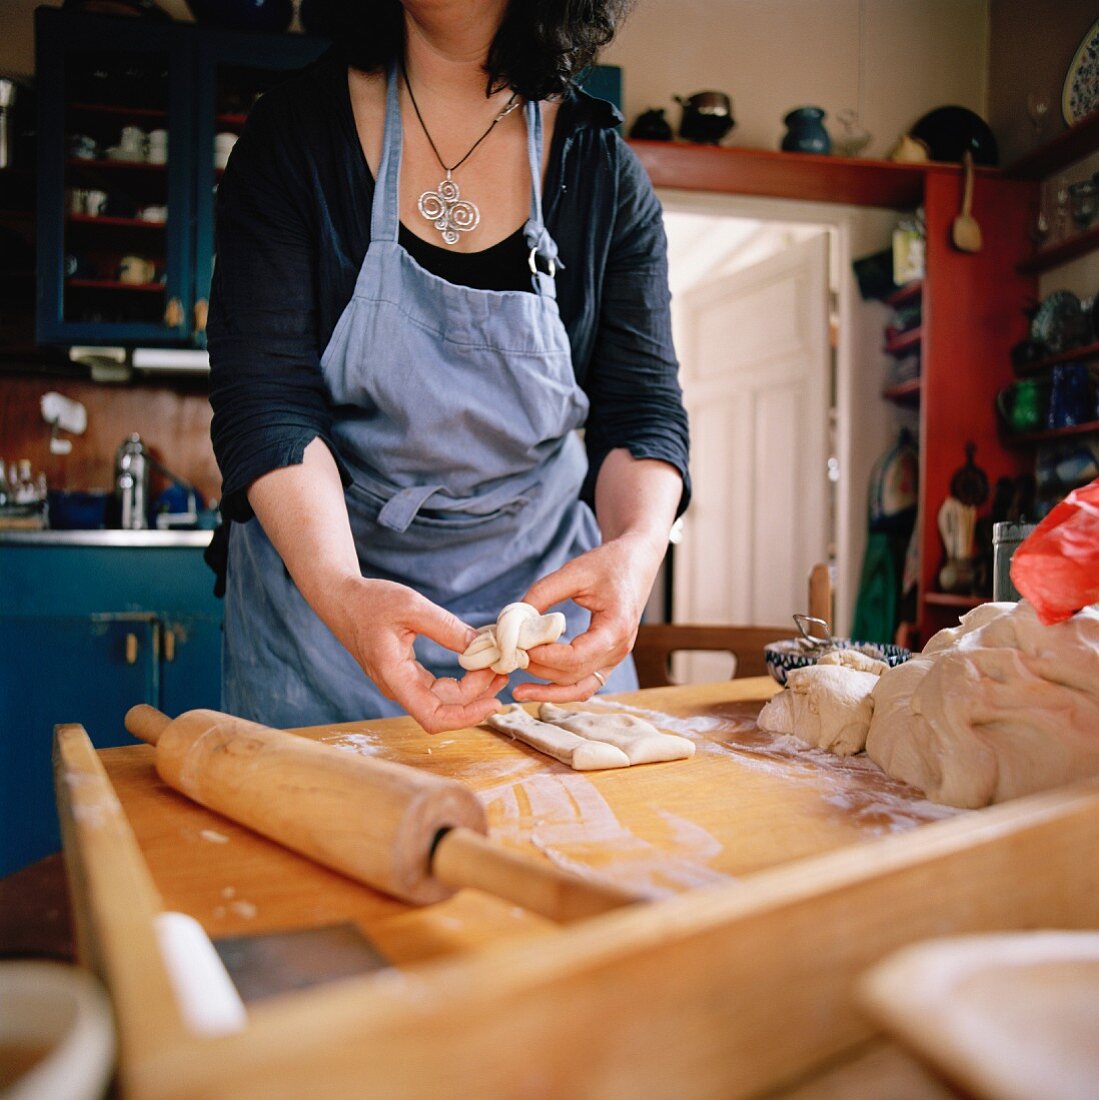 A woman making bread, Sweden.